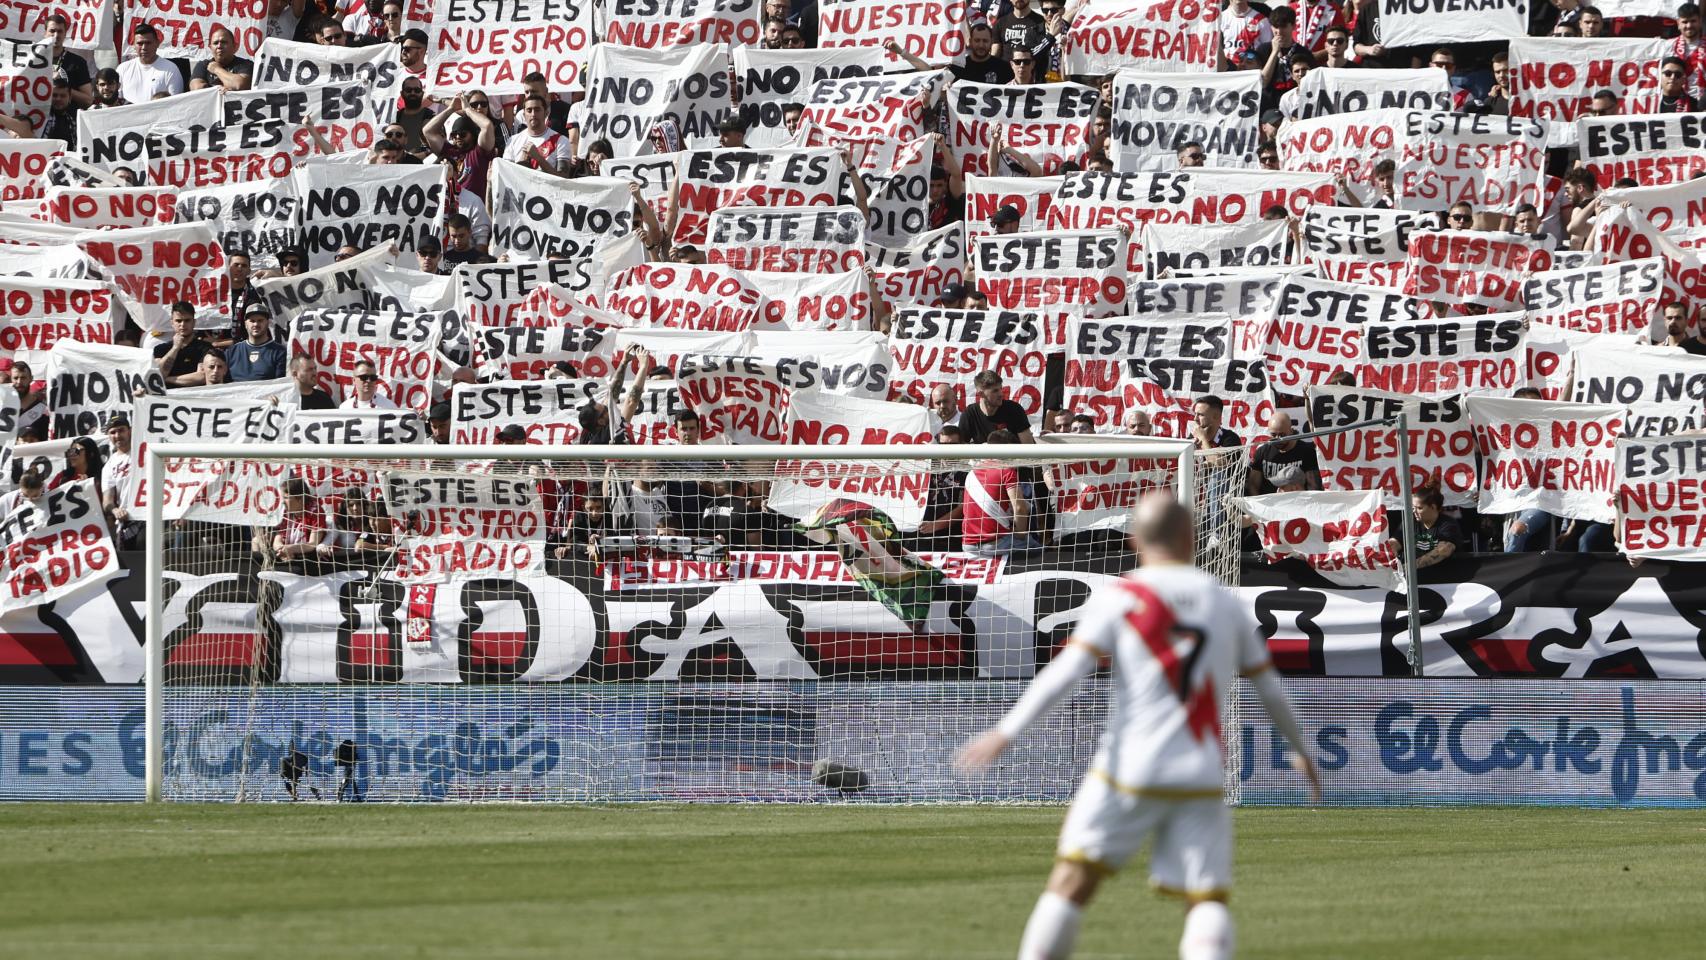 Reivindicación de los aficionados del Rayo Vallecano contra el traslado de estadio.